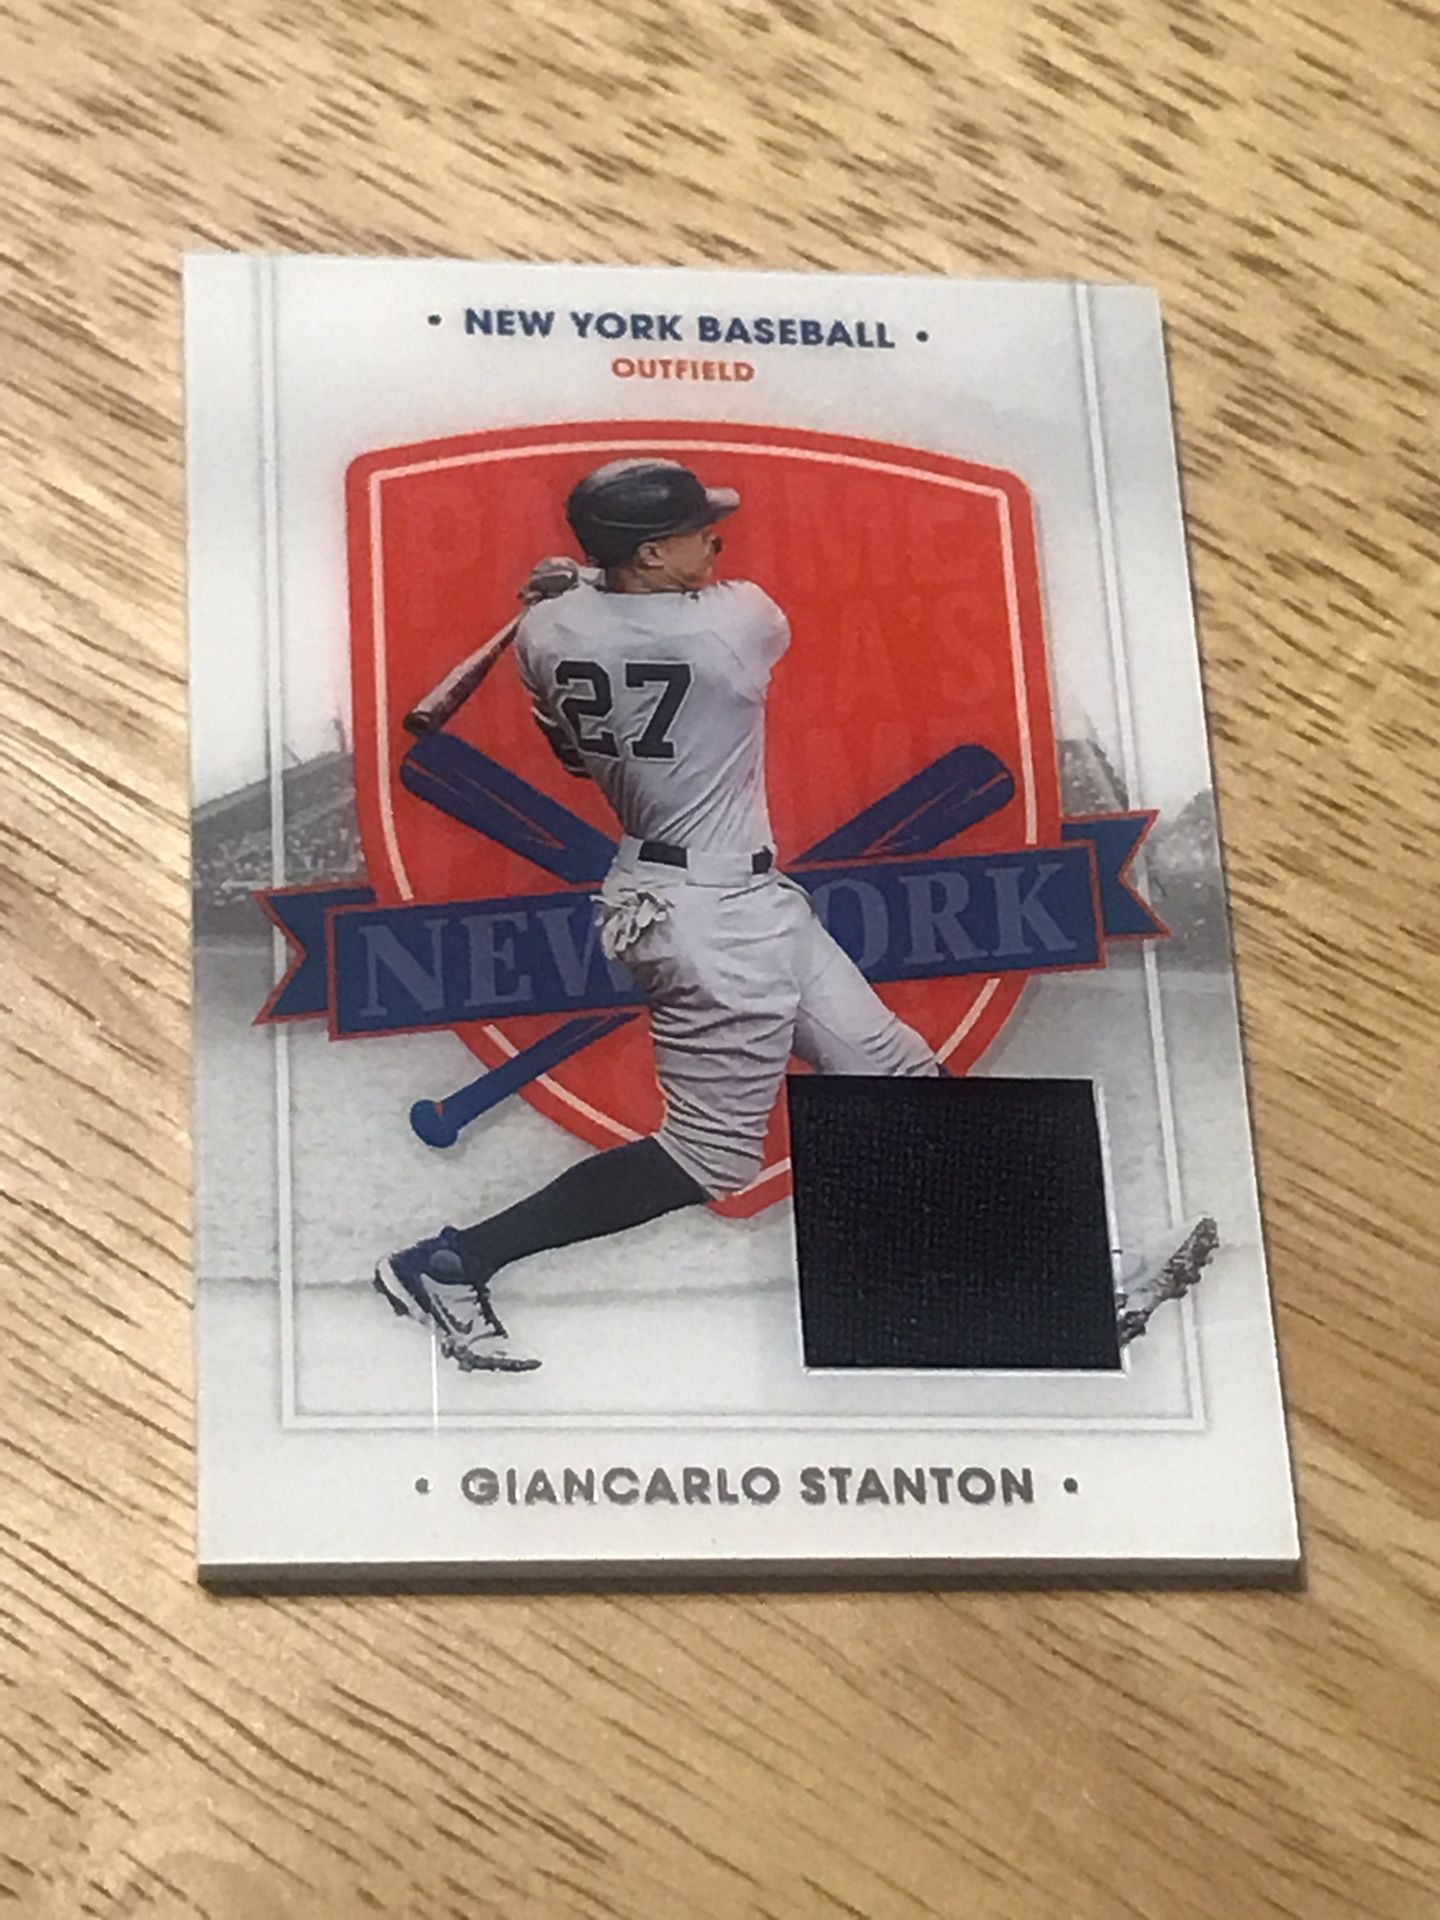 GIANCARLO STANTON jersey relic YANKEES baseball card